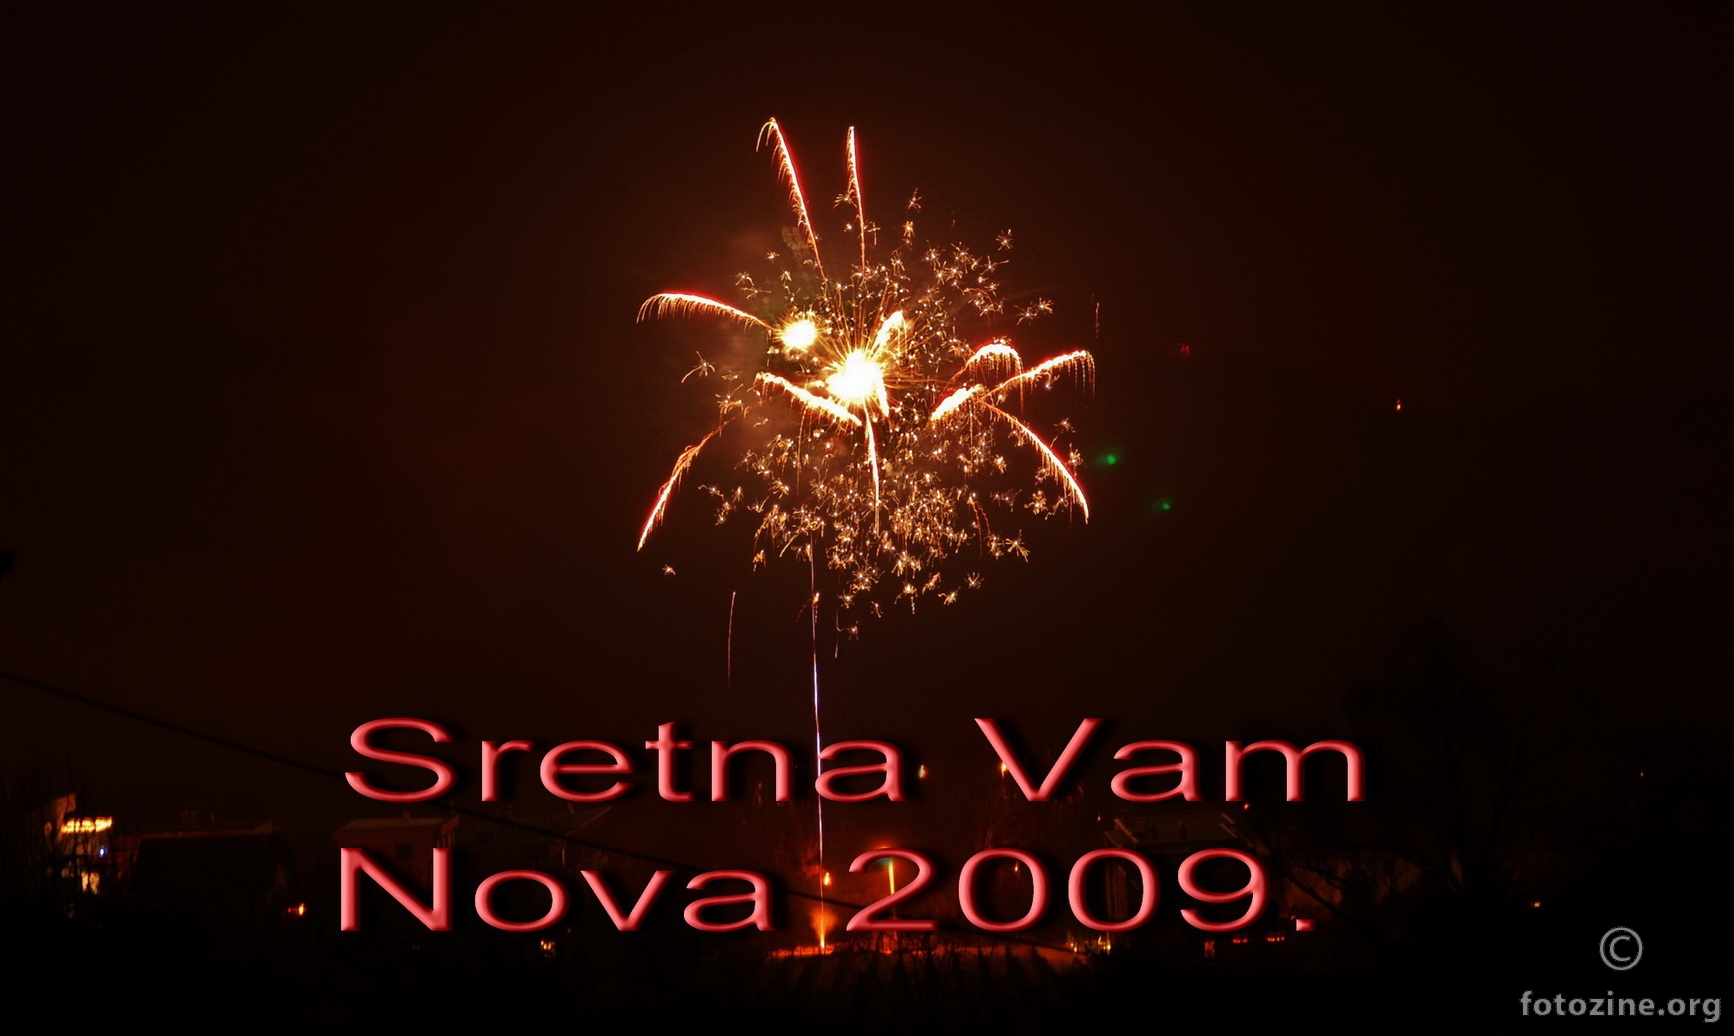 Sretna Vam Nova 2009.